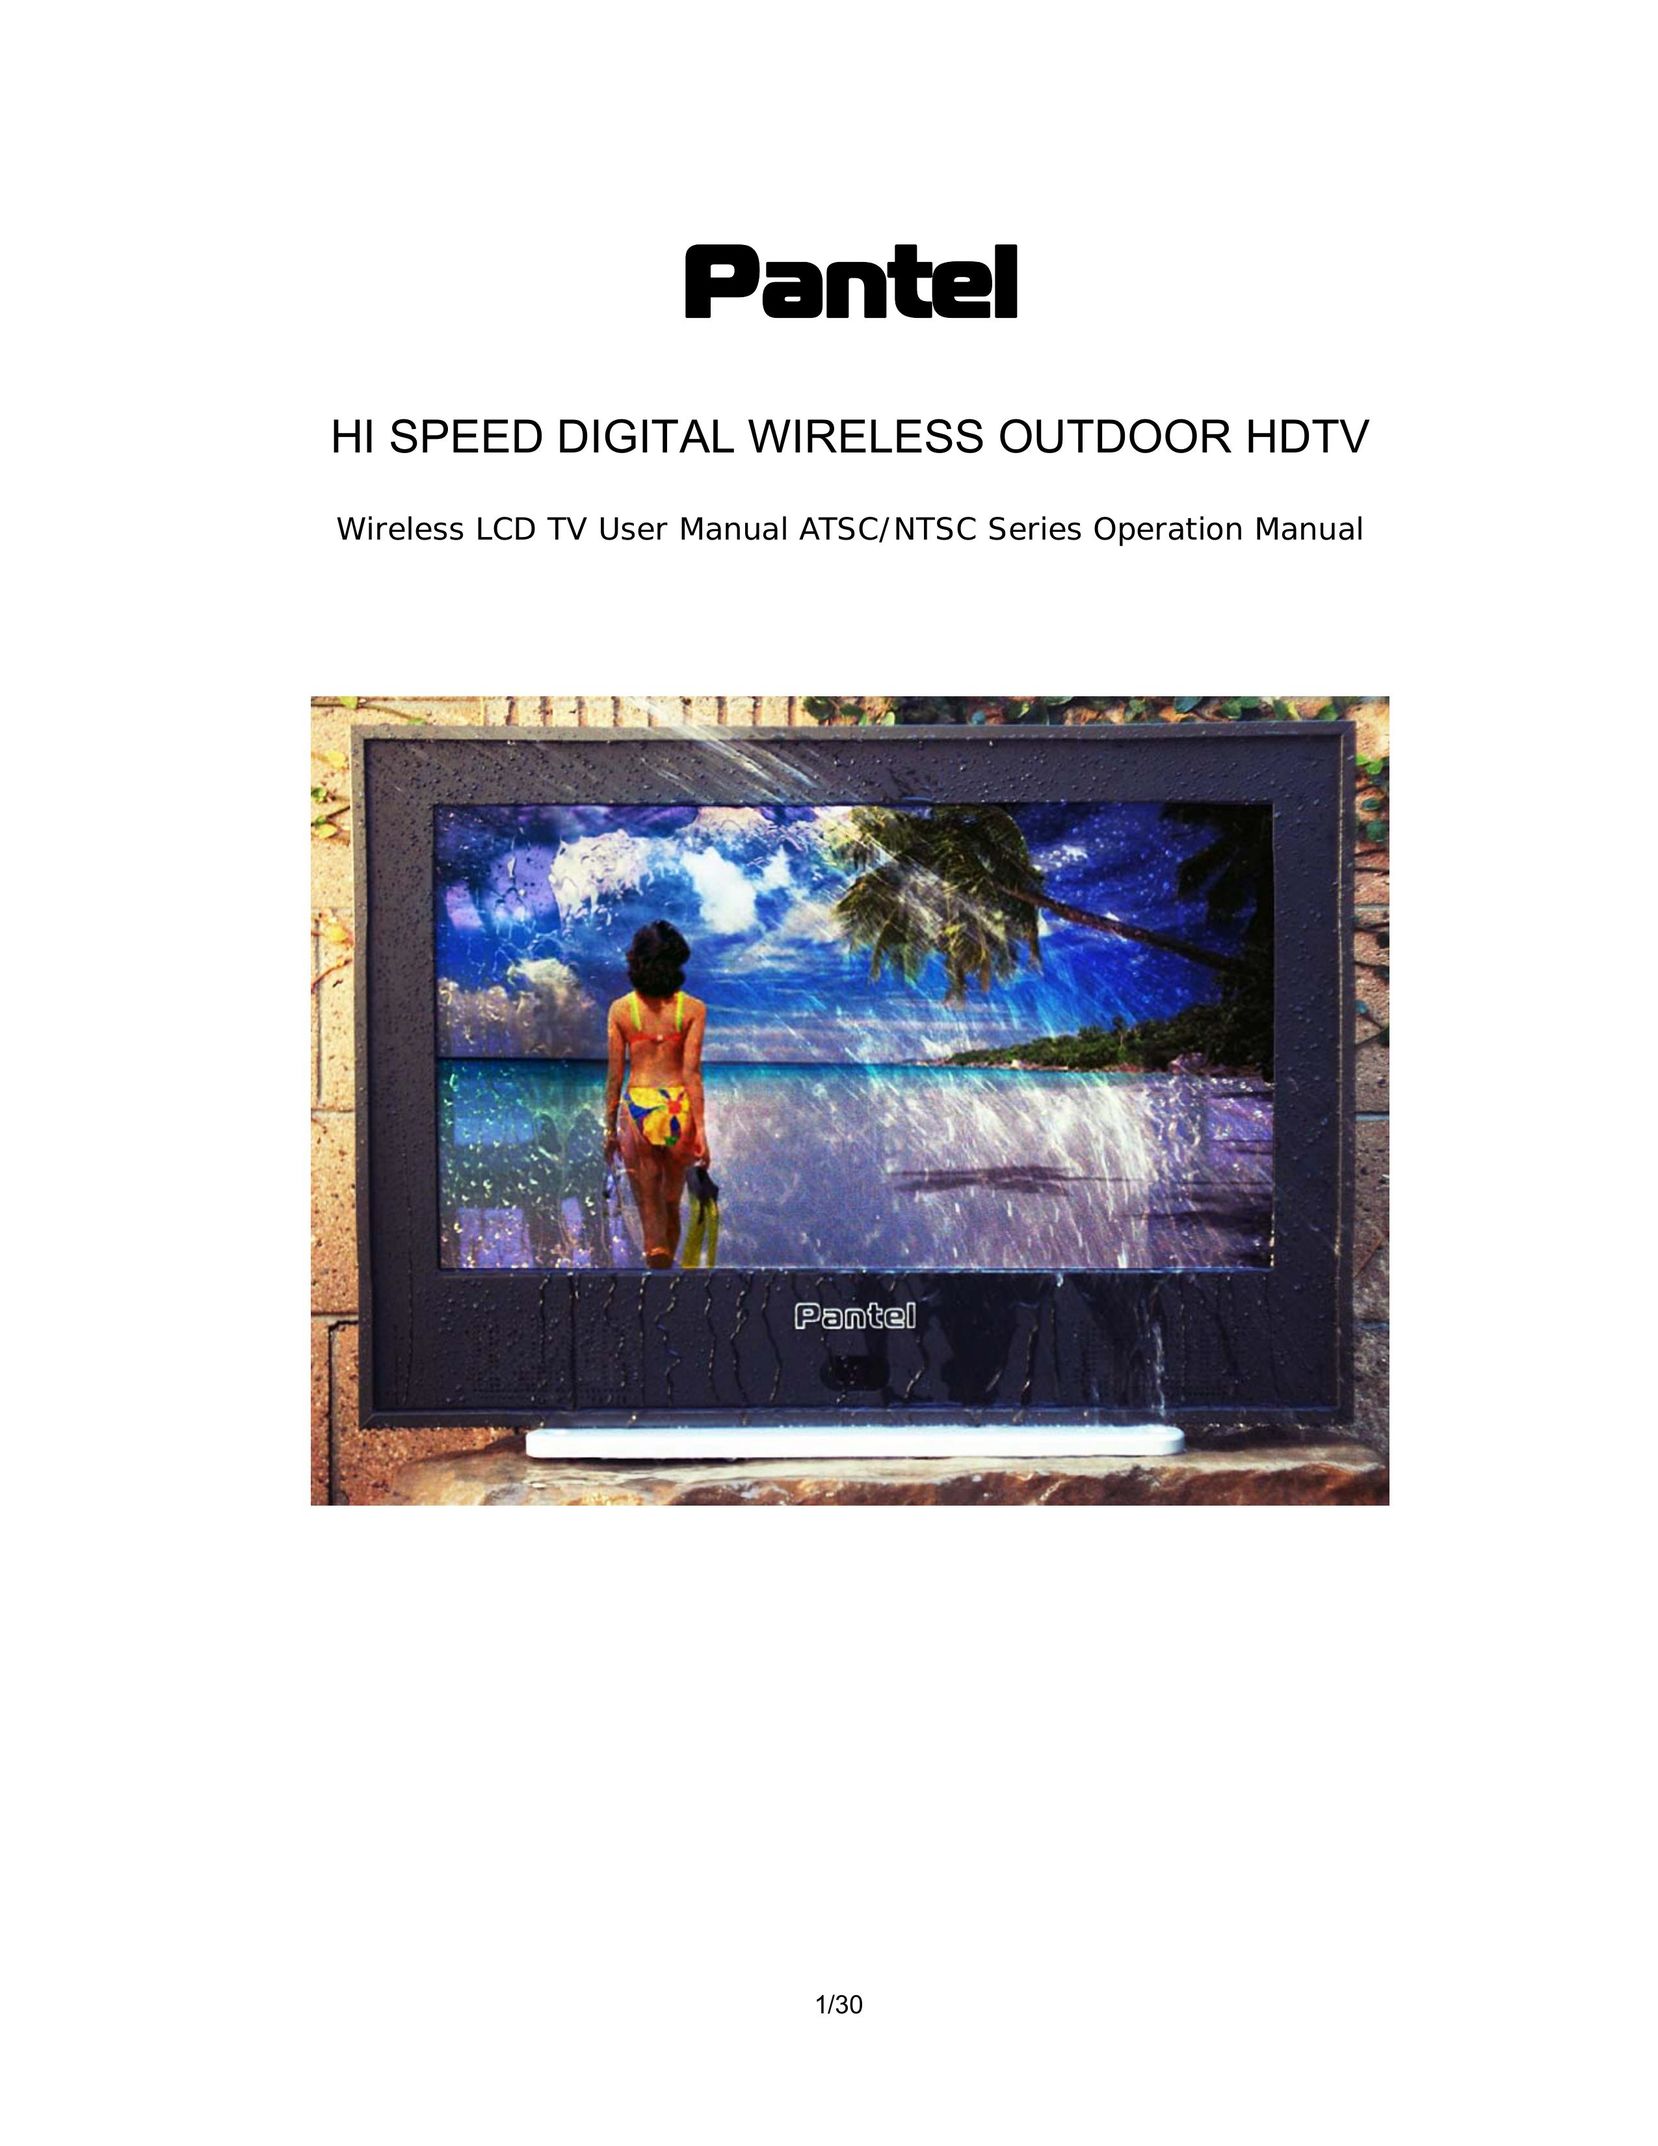 Pantel PAN200 Flat Panel Television User Manual